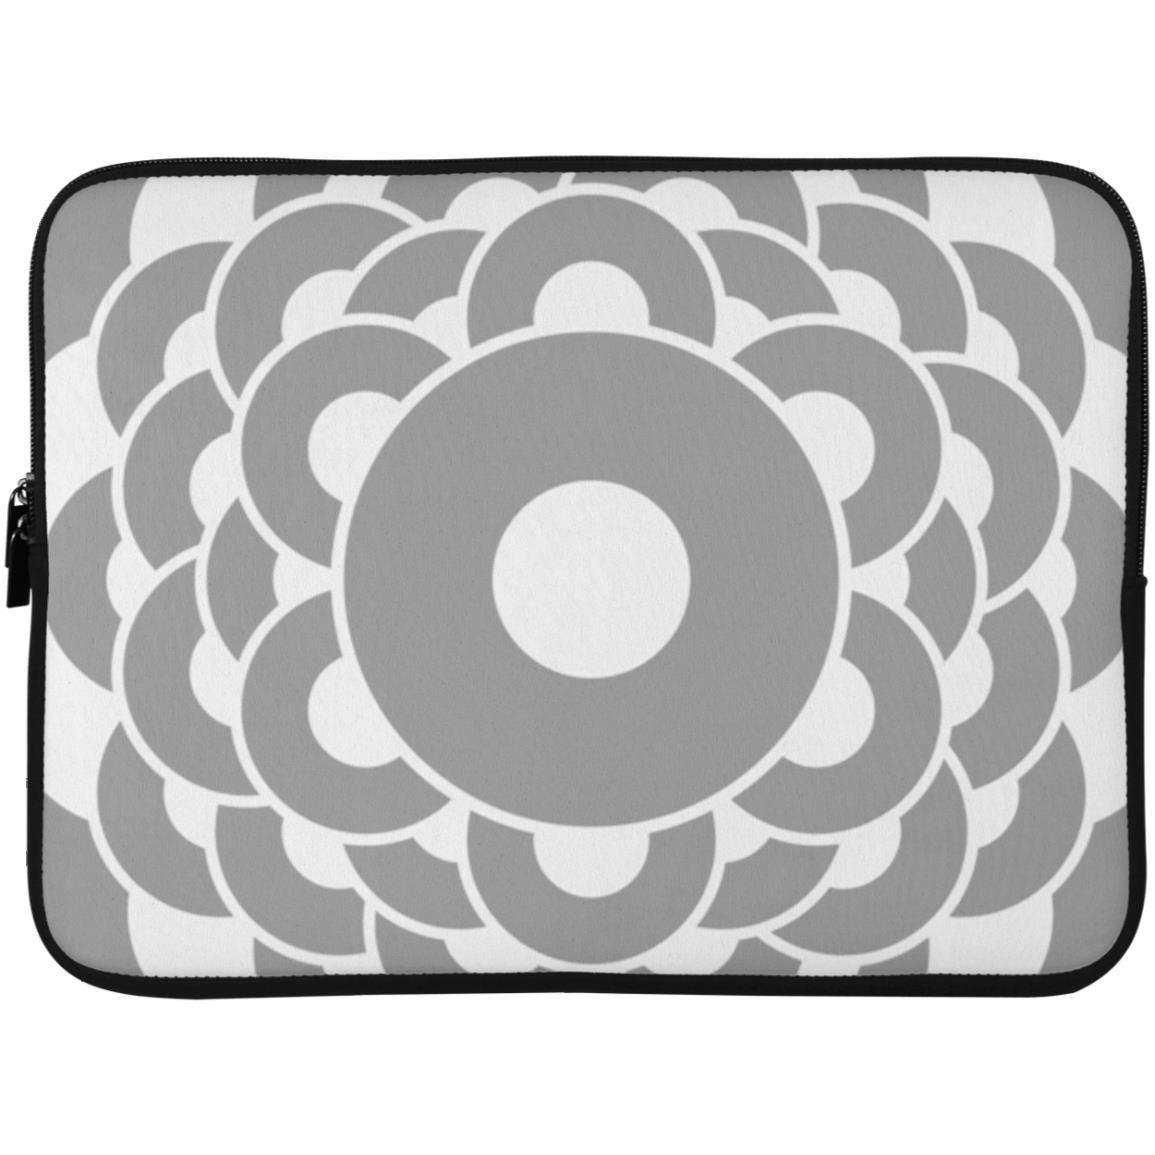 Crop Circle Laptop Sleeve - Thornborough Henge - Shapes of Wisdom